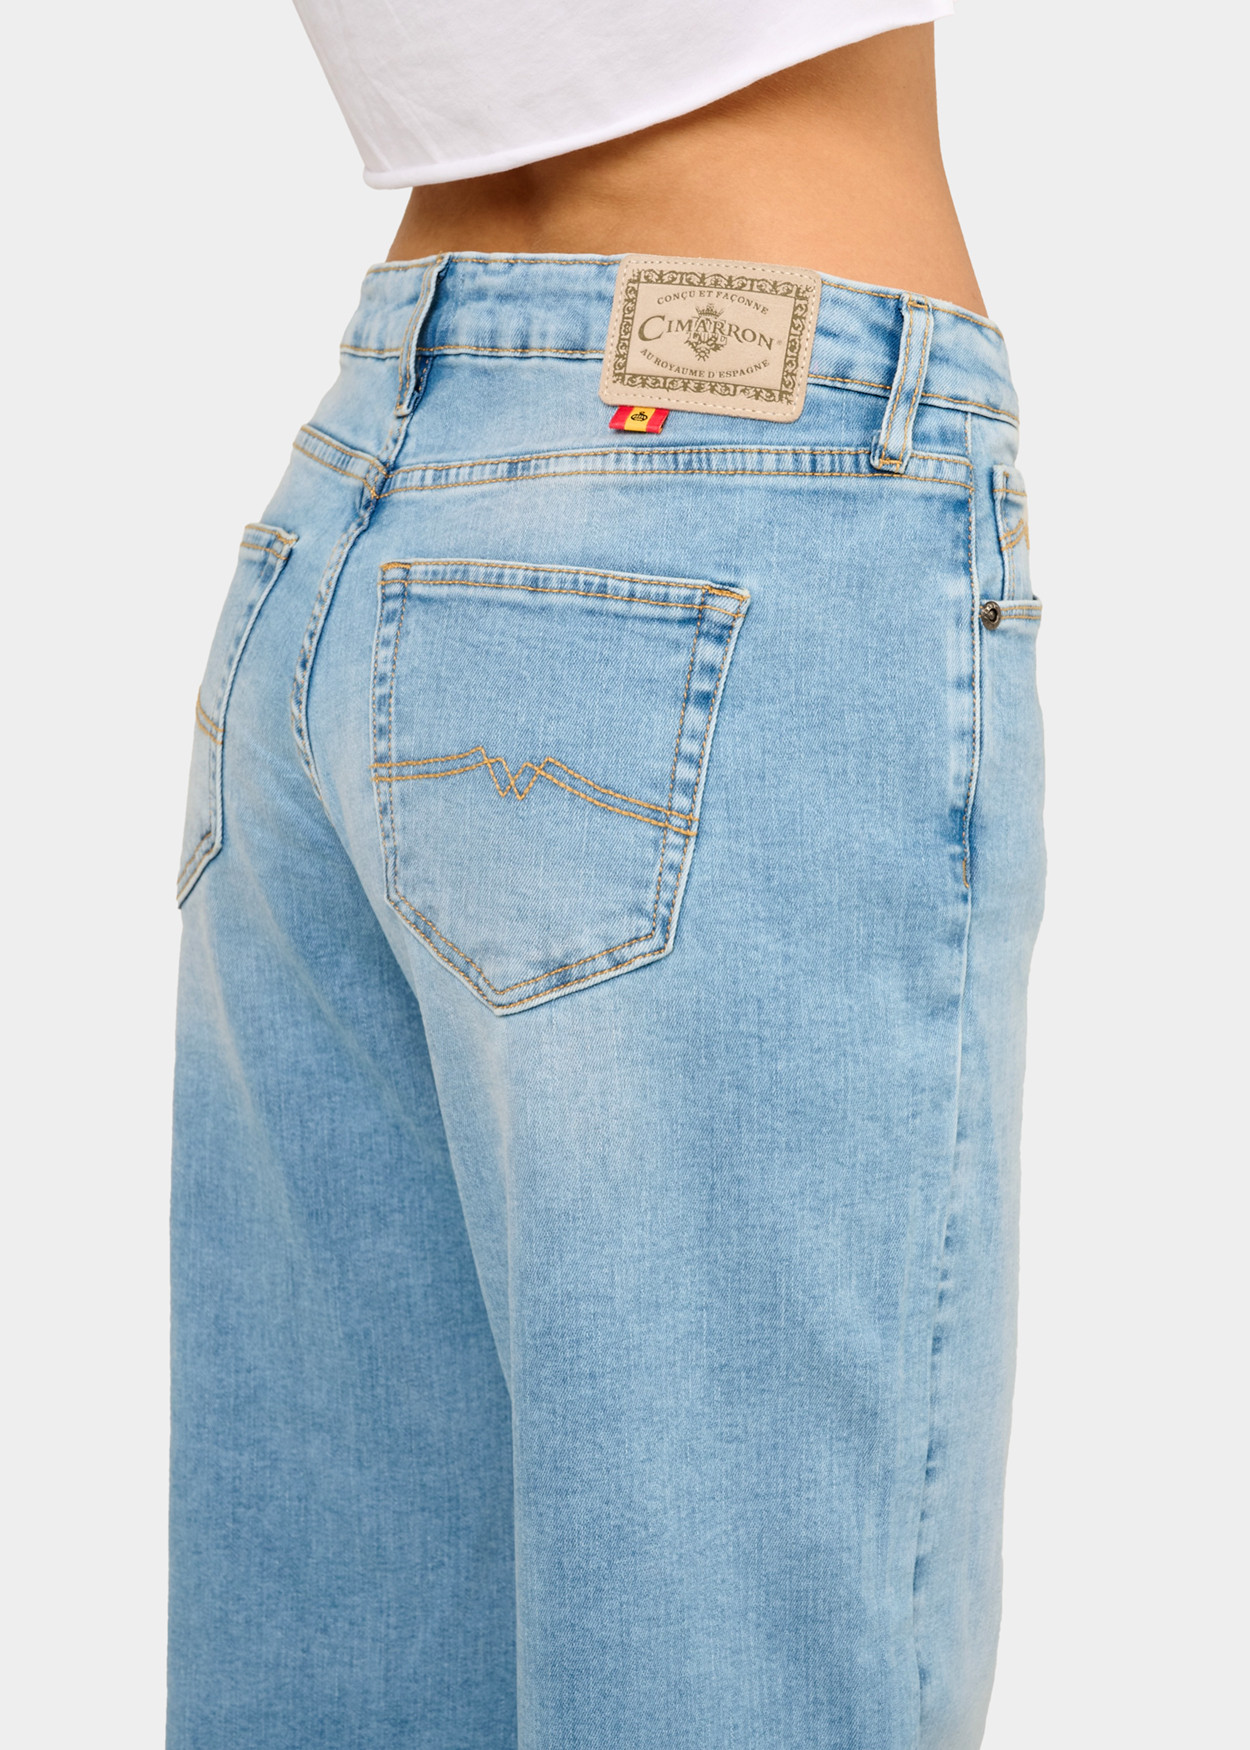 CELIA-ARIANE - Pantalon | Extra Flare - Short Medium Stone Wash | Taille en Pouces Cimarron